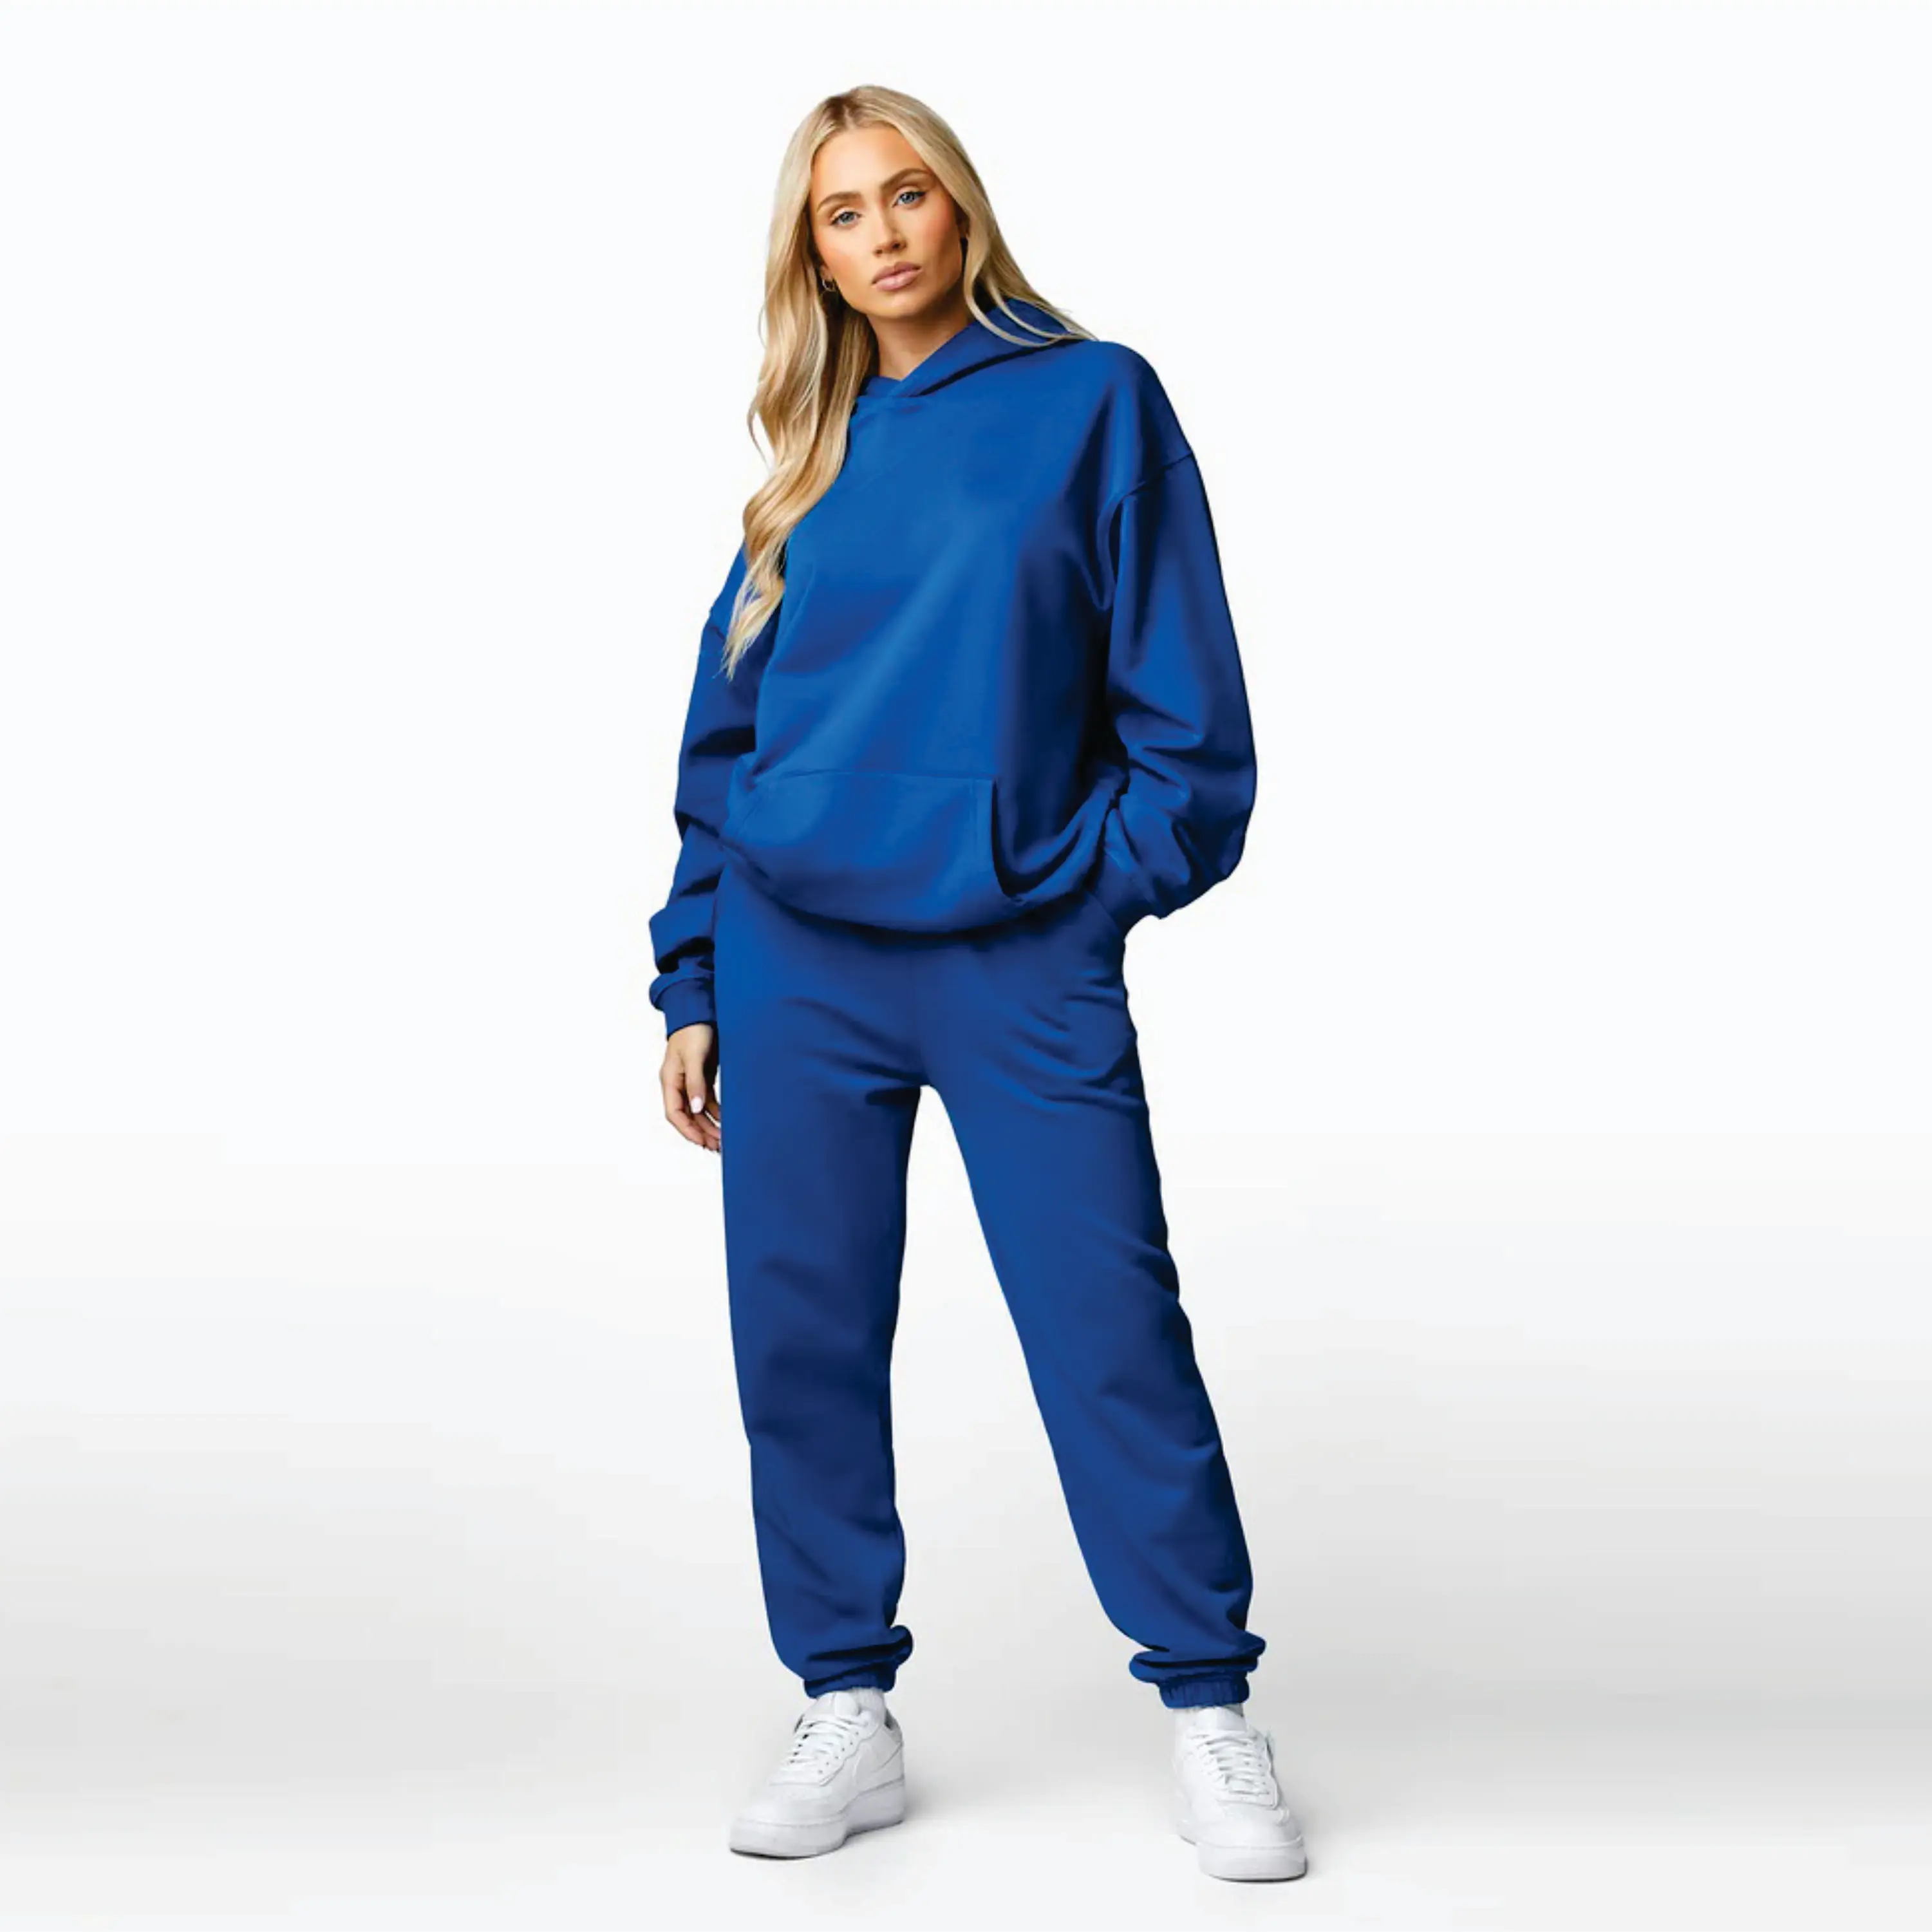 Benutzer definiertes Markenlogo 65% Baumwolle 35% Polyester Übergroße Relaxed Fit Heather Grey Recharge Hood Damen Trainings anzug